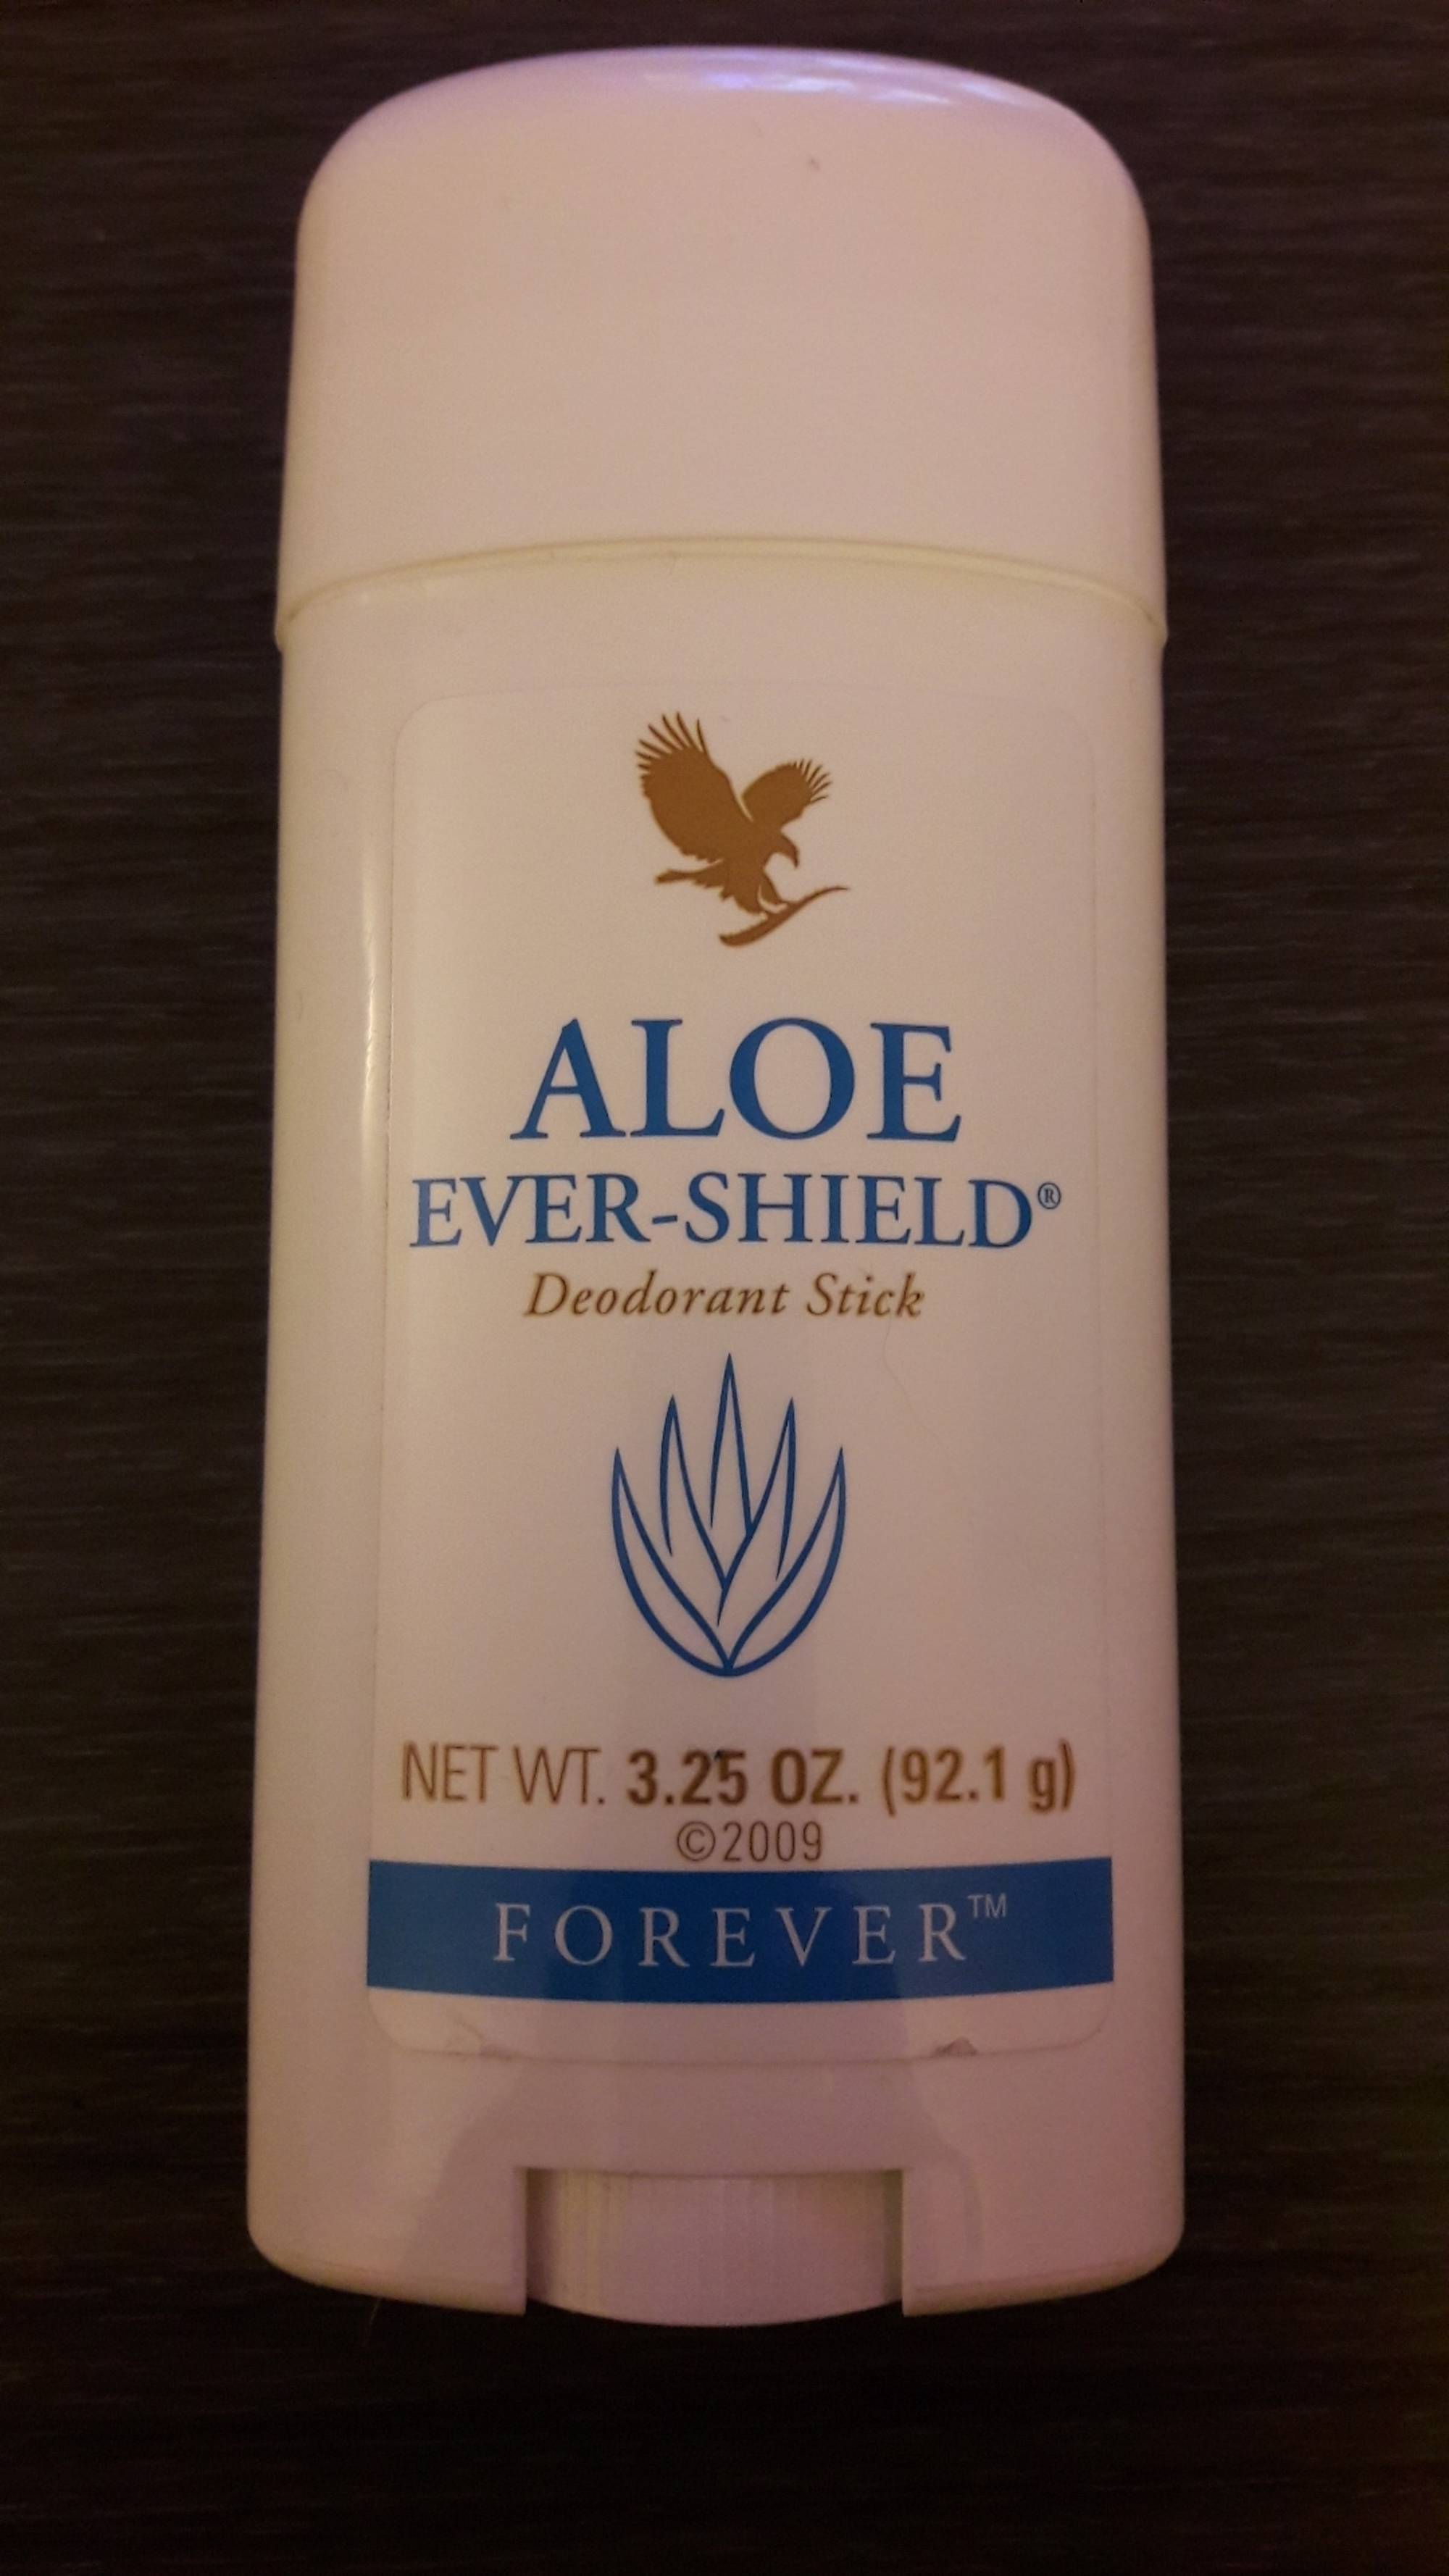 FOREVER - Aloe ever-shield - Deodorant Stick